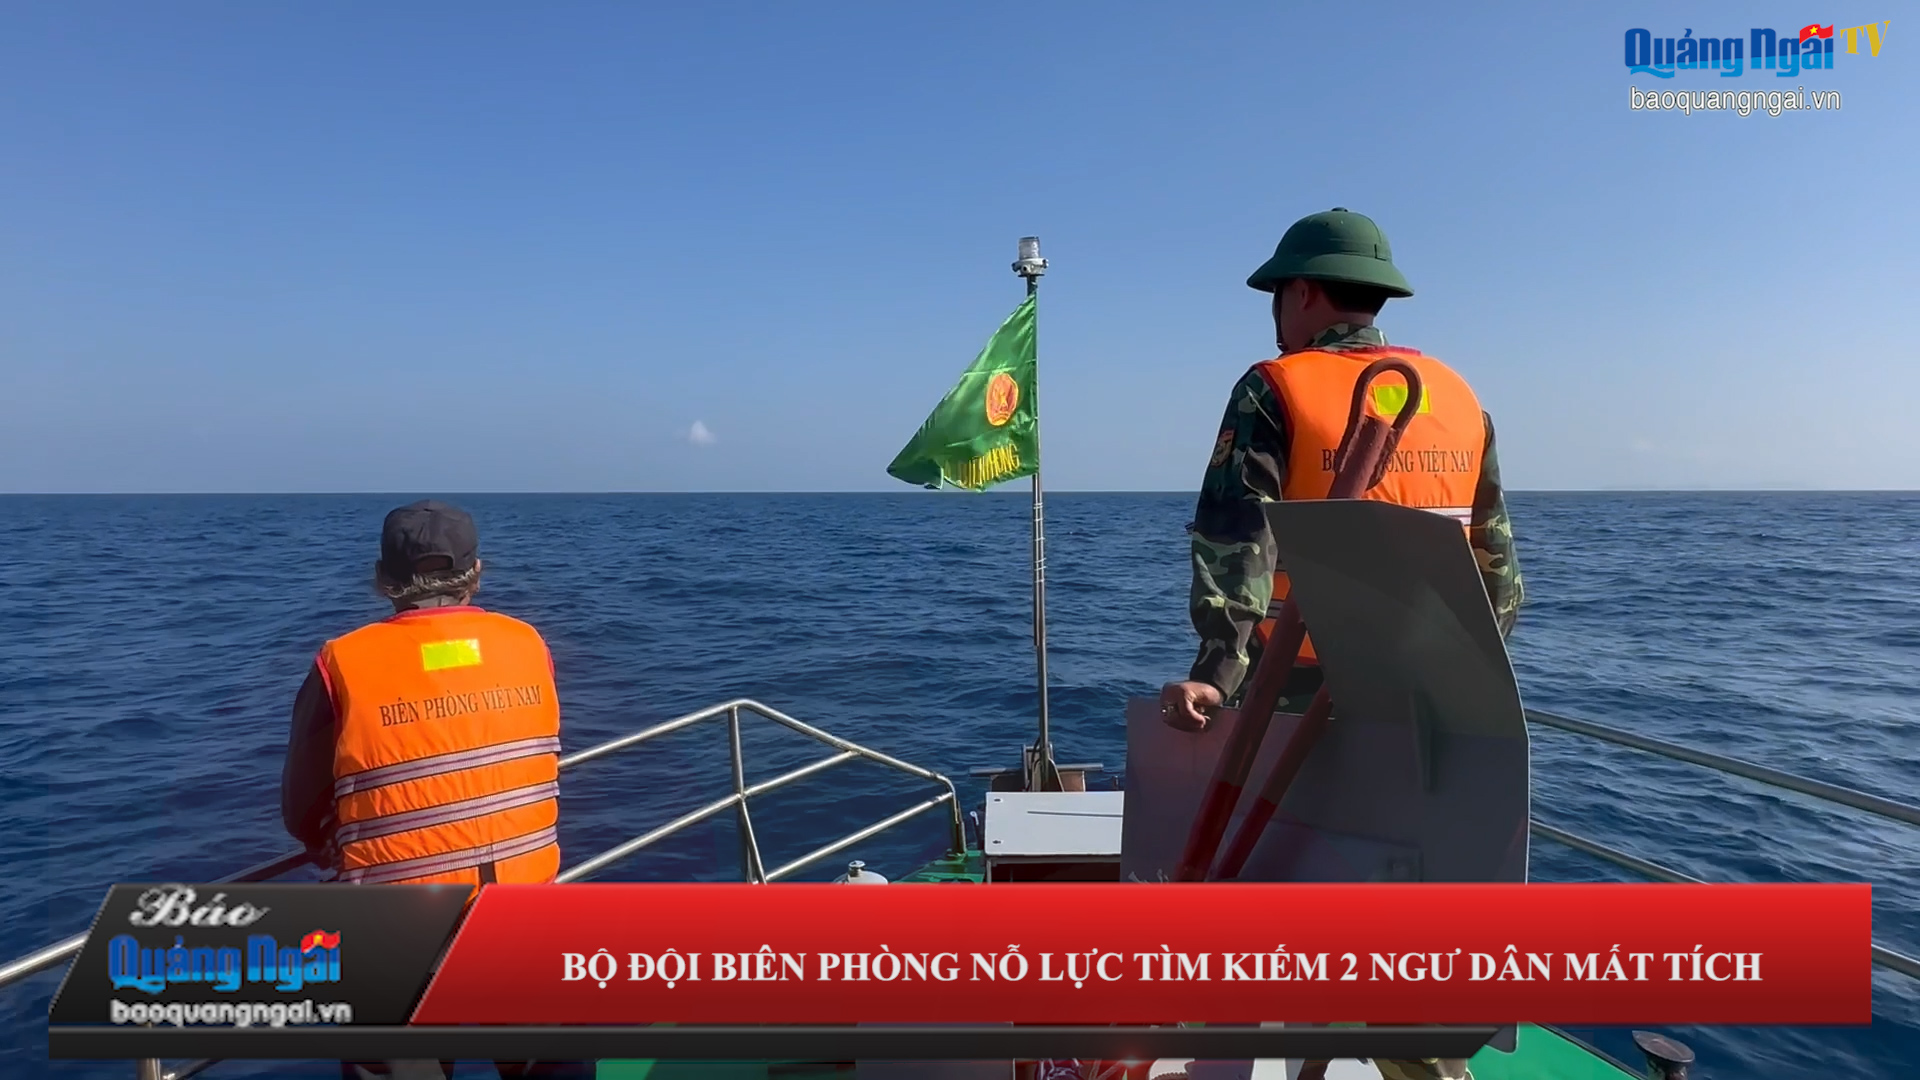 Video: Bộ đội Biên phòng nỗ lực tìm kiếm 2 ngư dân mất tích